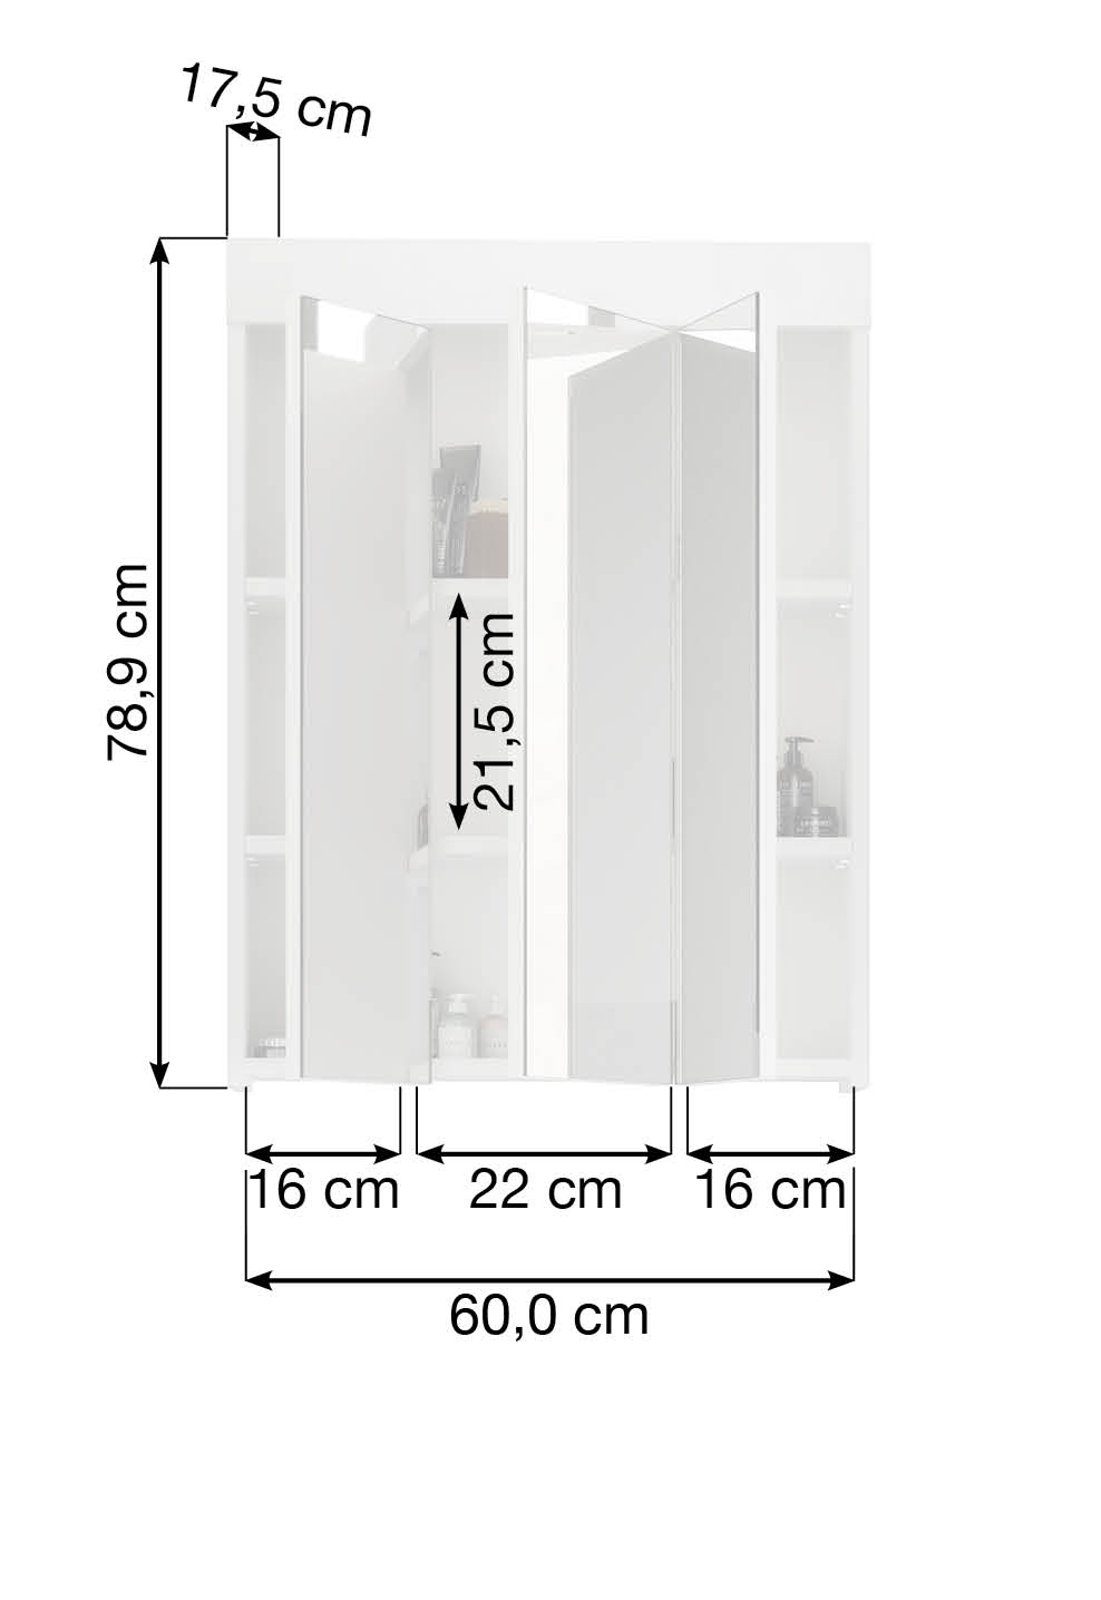 xonox.home Badezimmerspiegelschrank Snow (Spiegelschrank 3-türig, weiß 60x79 Hochglanz) und Steckdose LED-Beleuchtung cm, inklusive